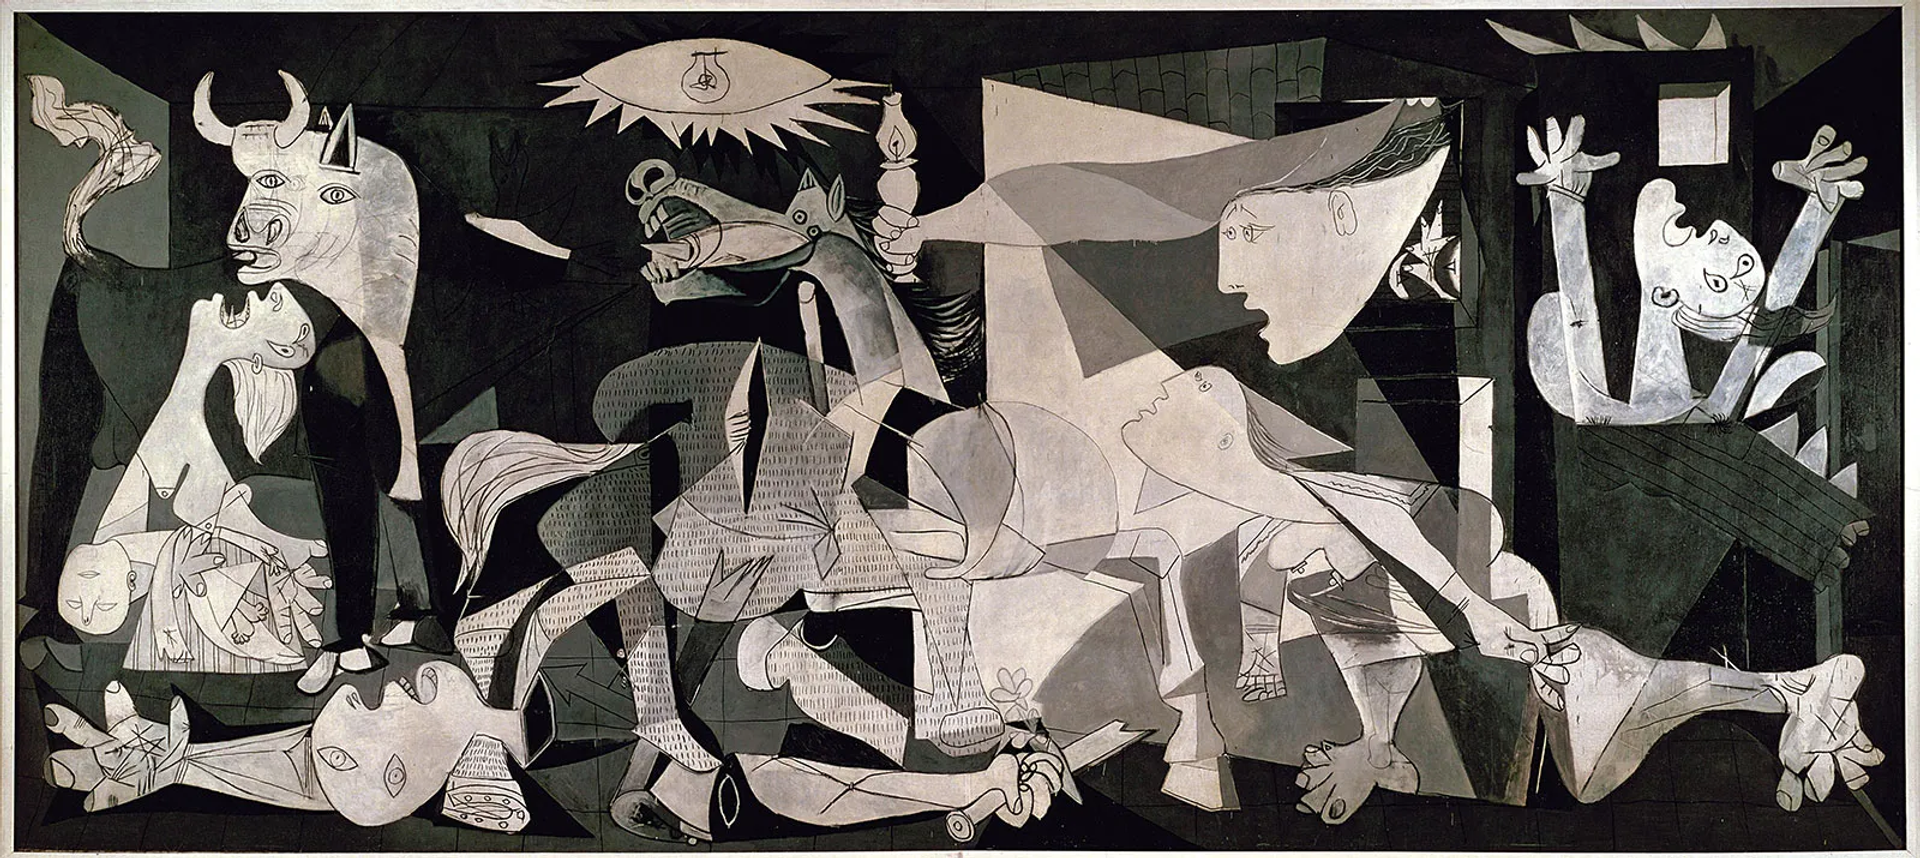 Pablo Picasso's Guernica. A black and white monochromatic Cubist interpretation of the Spanish Civi War. 